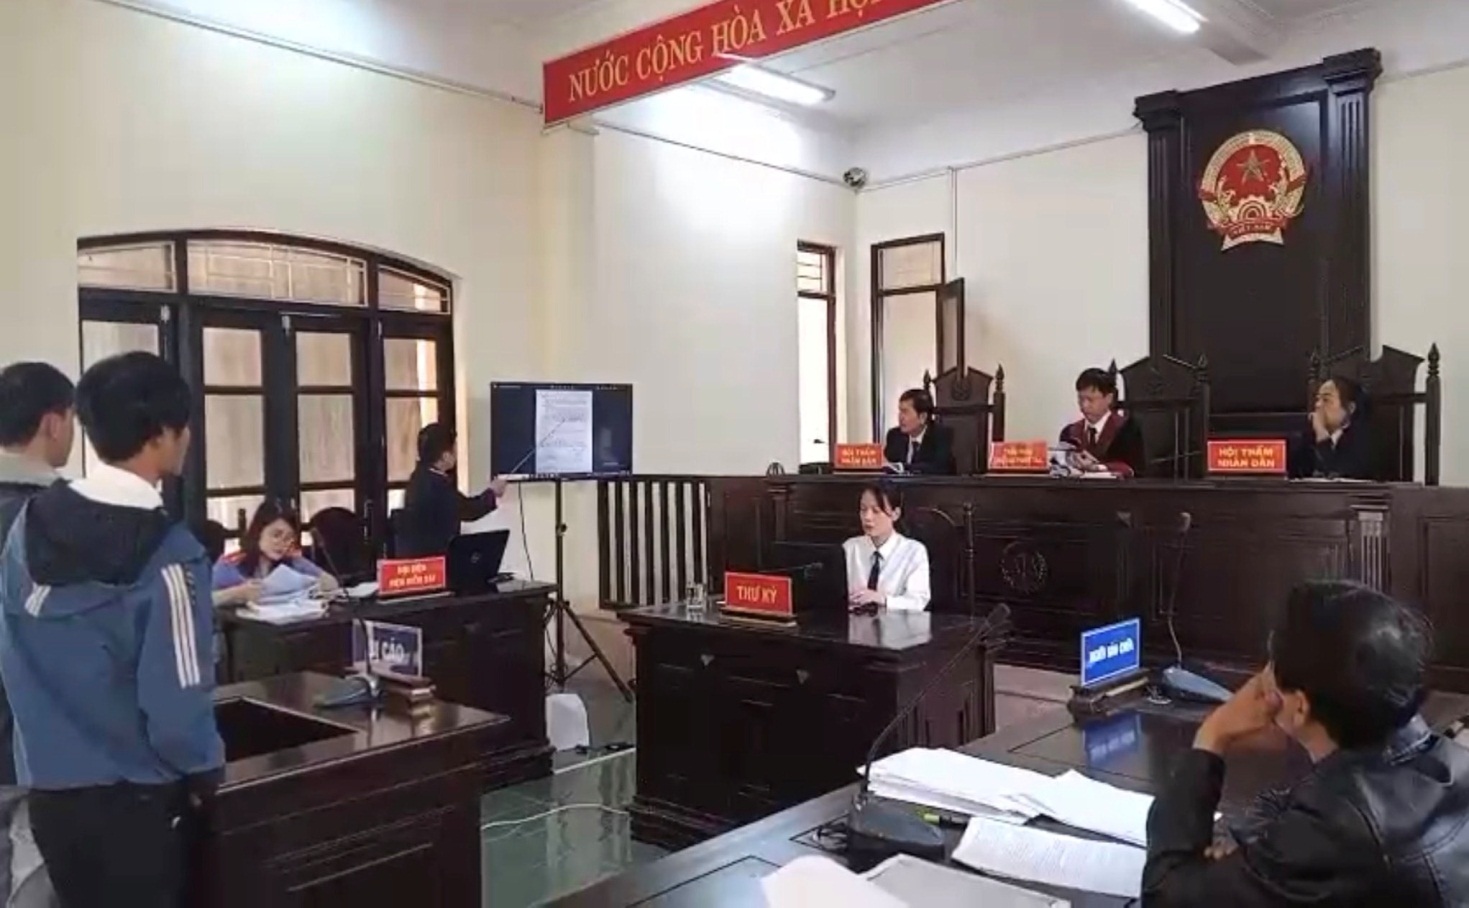 Hồng Bàng Tổ chức phiên tòa rút kinh nghiệm công bố chứng cứ tài liệu  bằng hình ảnh tại phiên tòa